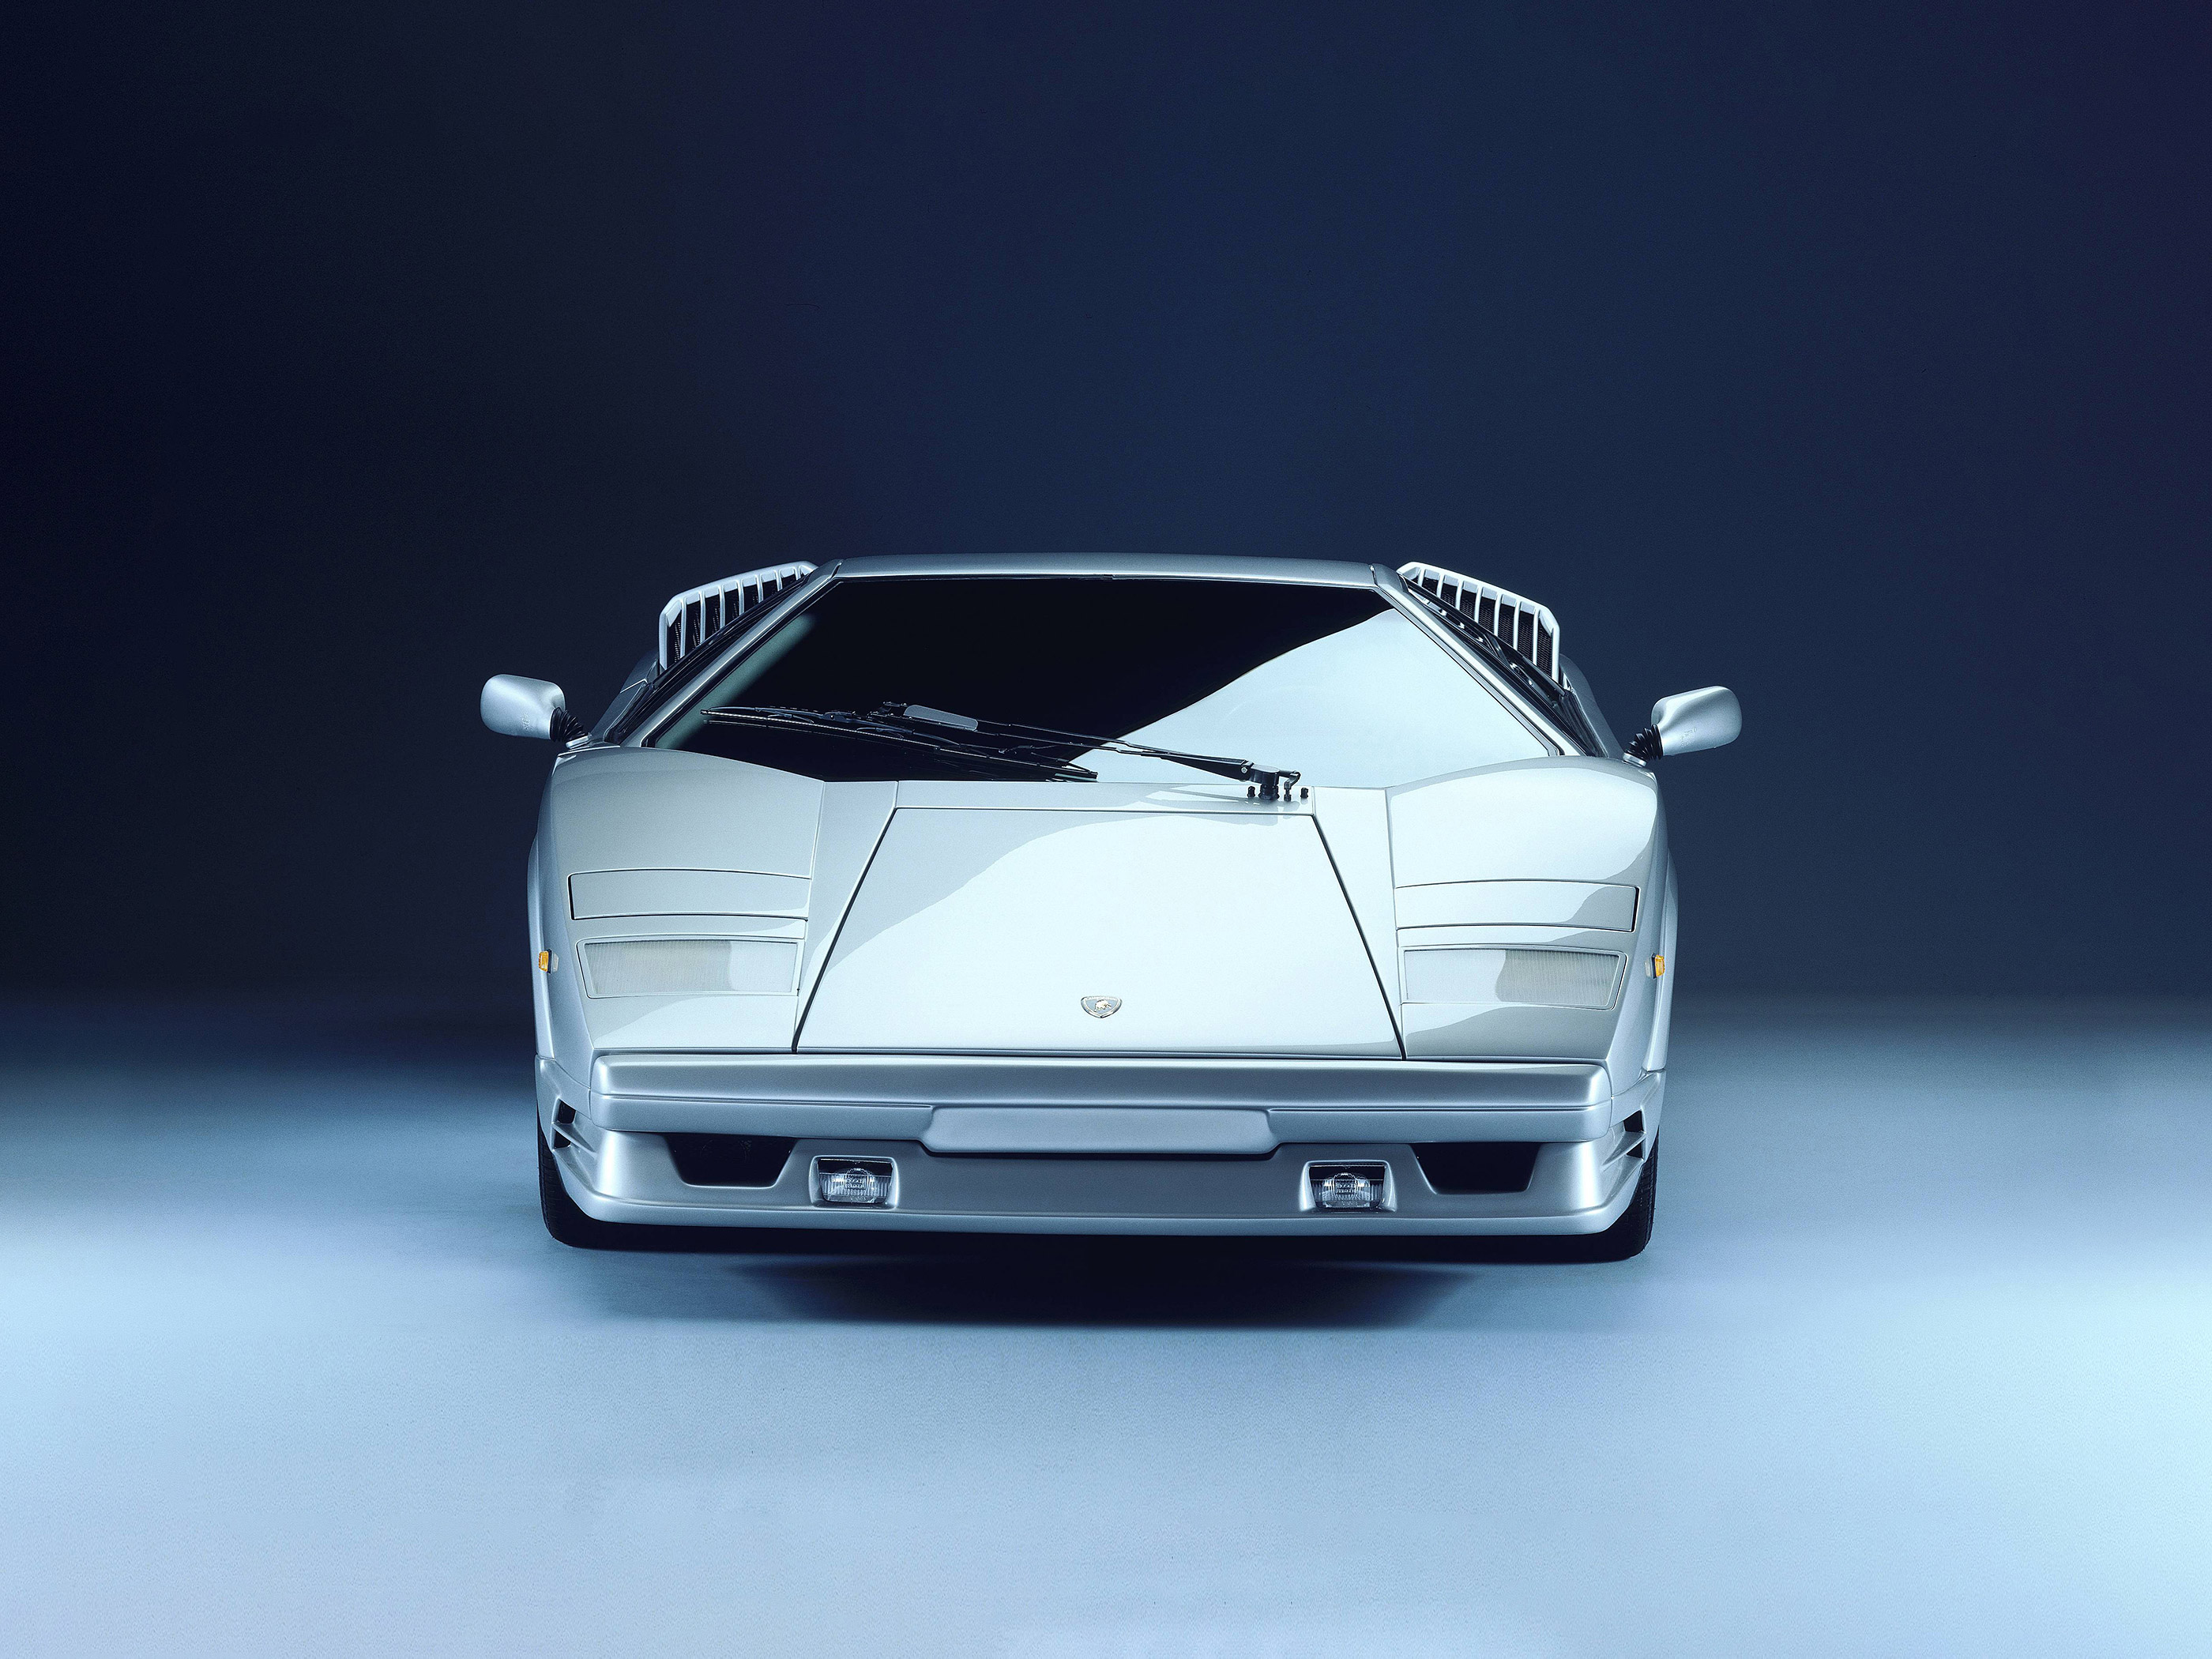  1989 Lamborghini Countach 25th Anniverary Wallpaper.